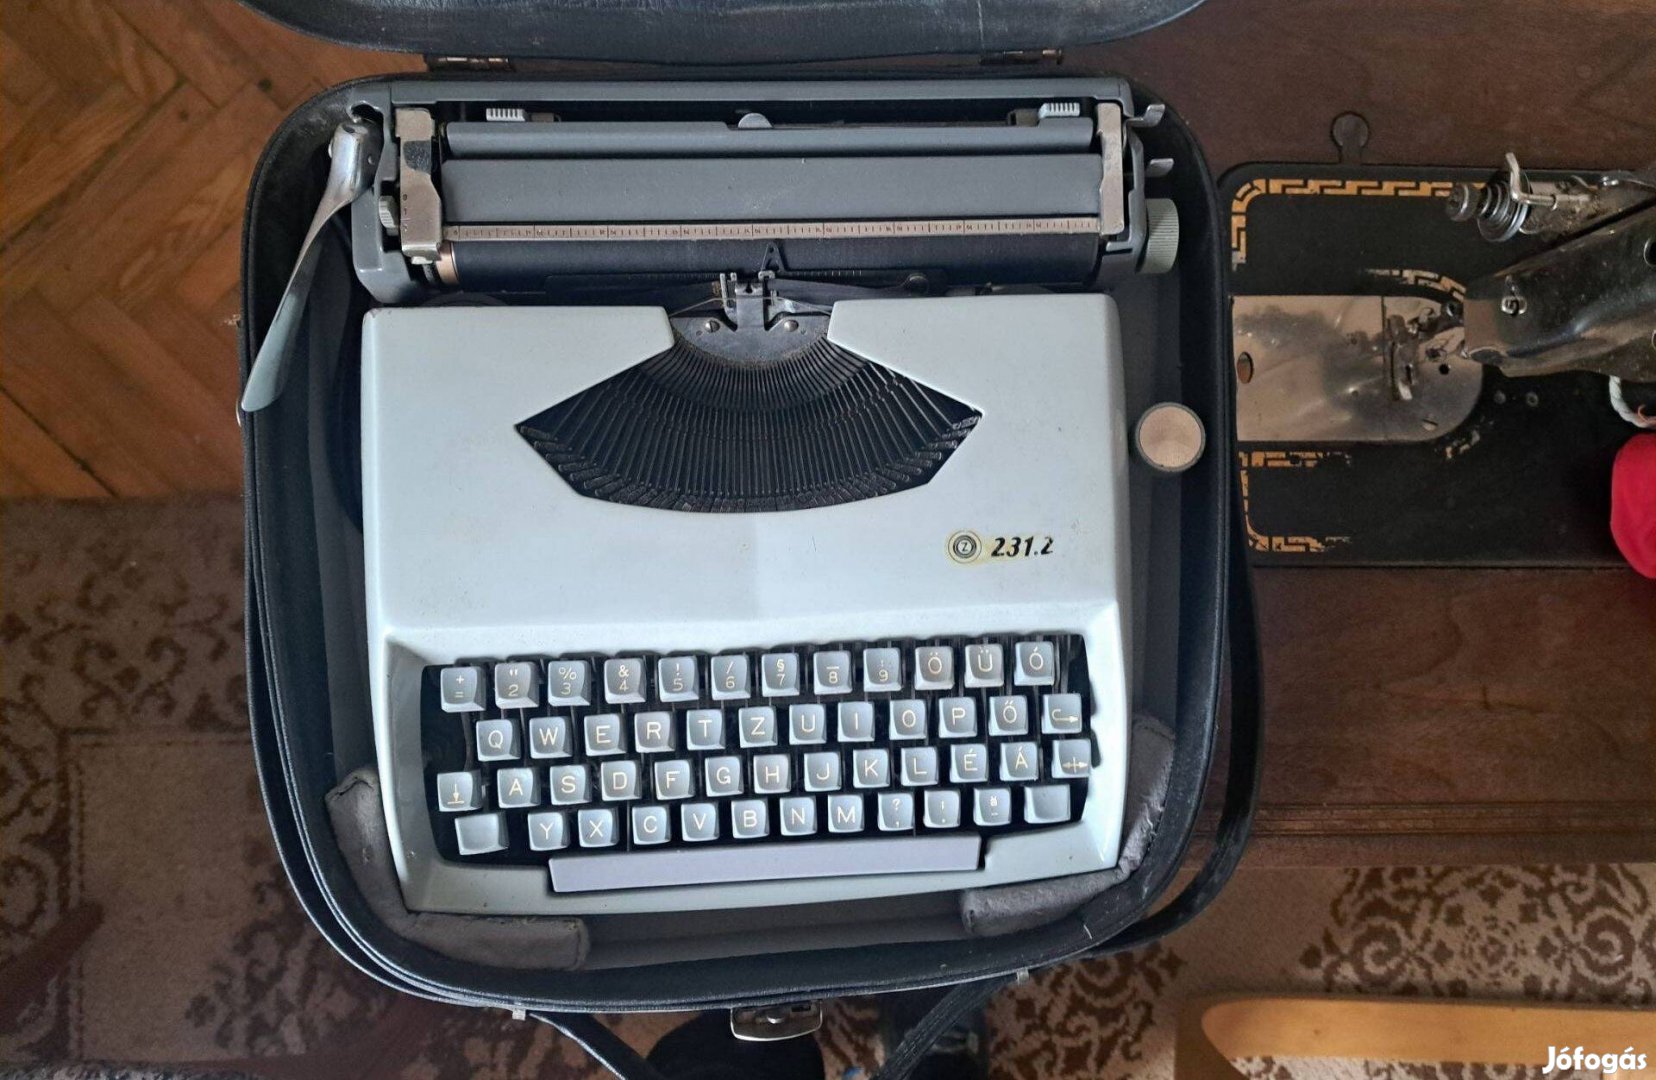 Hagyományos írógép (Consul mode 231.2)